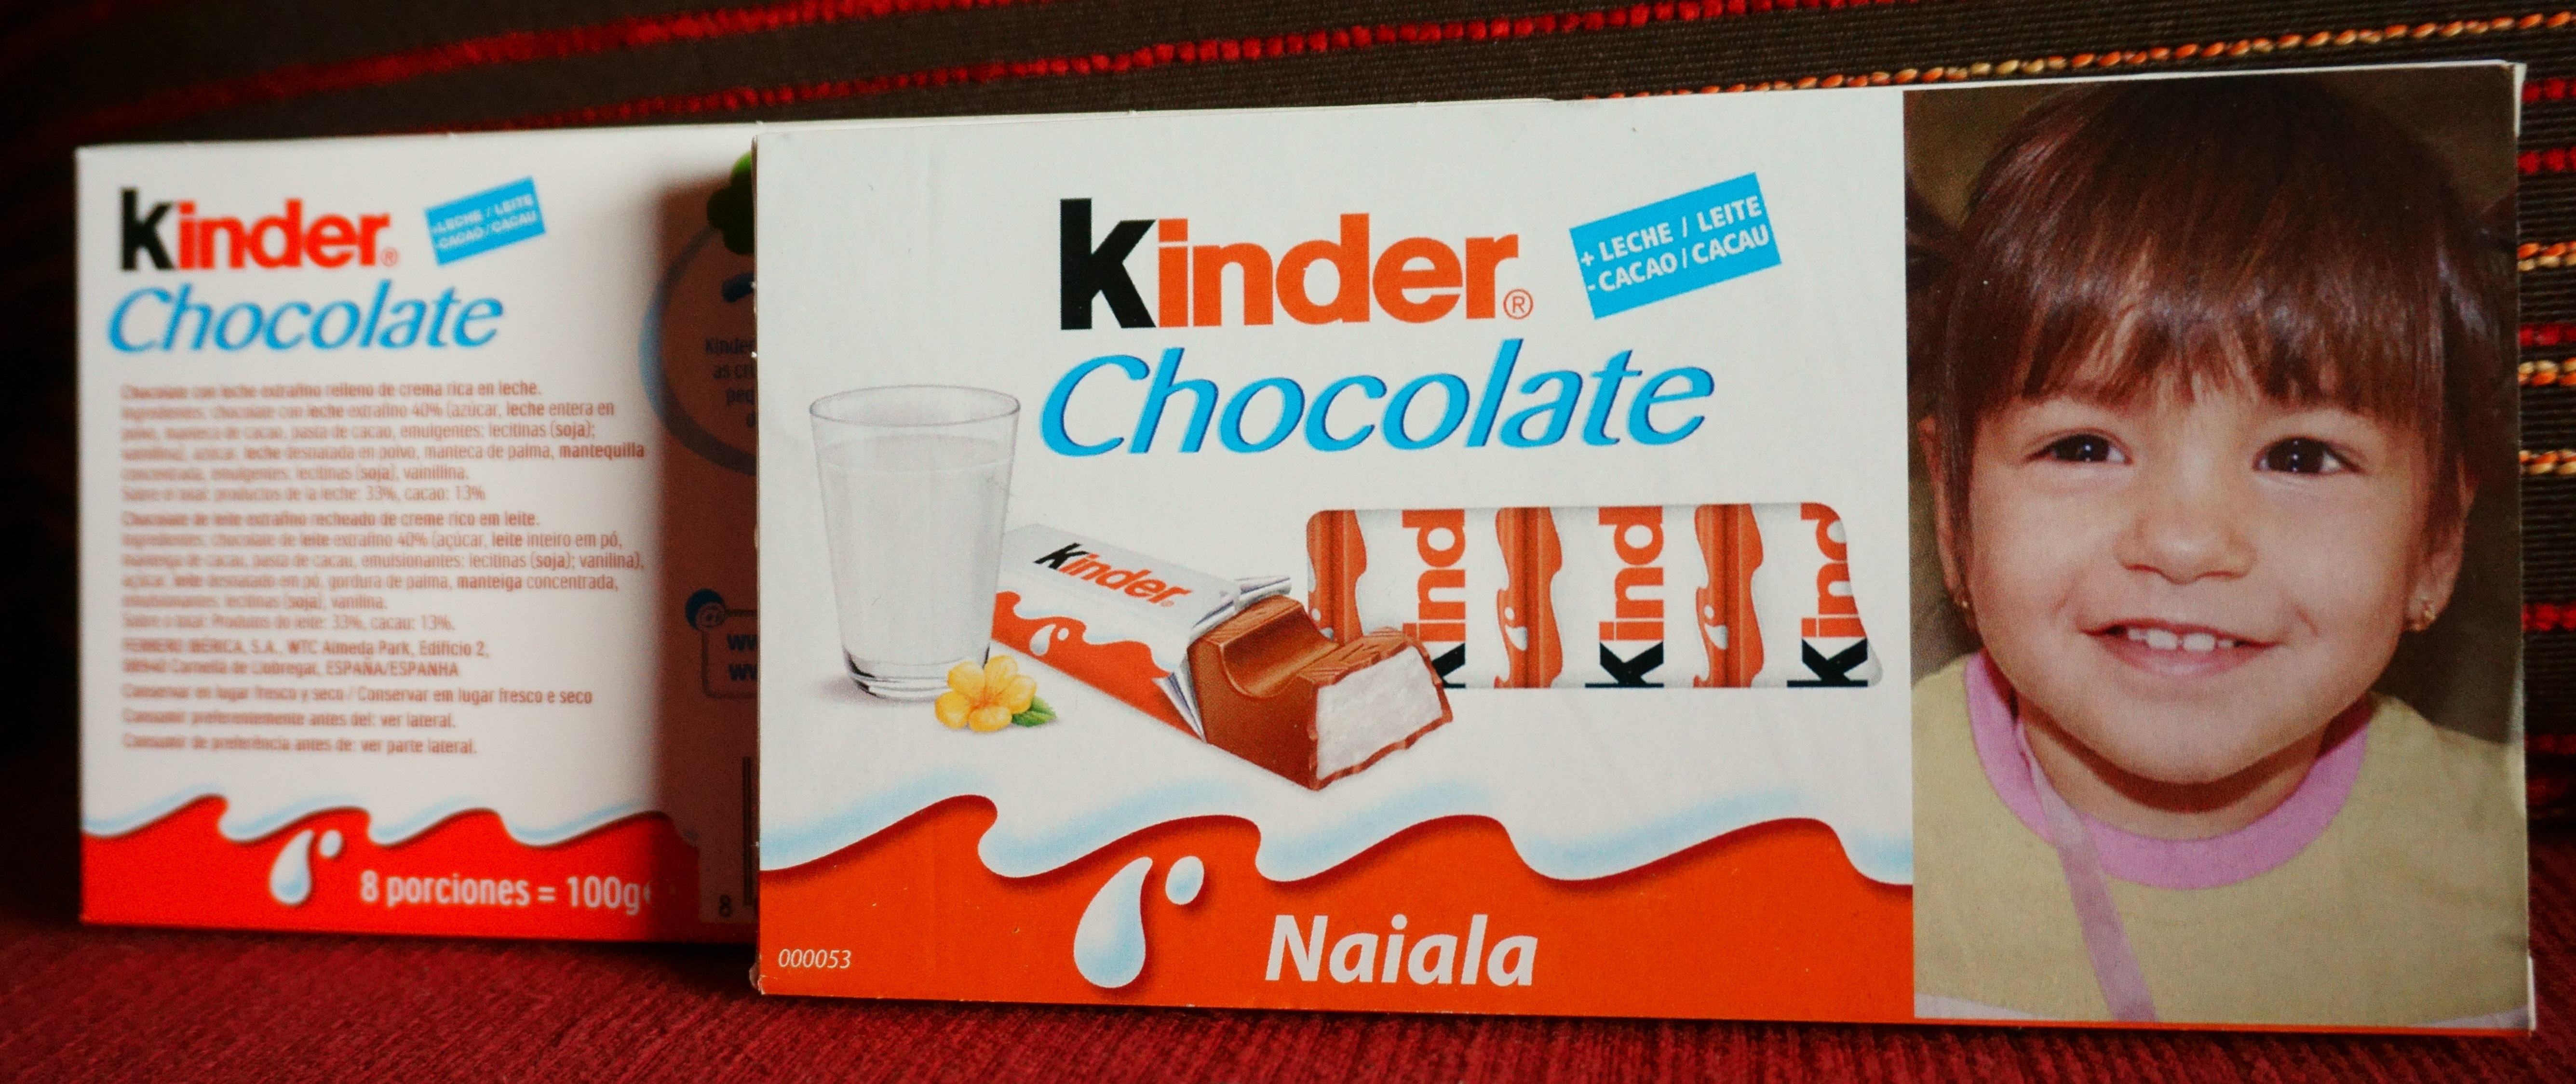 Kinder Chocolate Cara